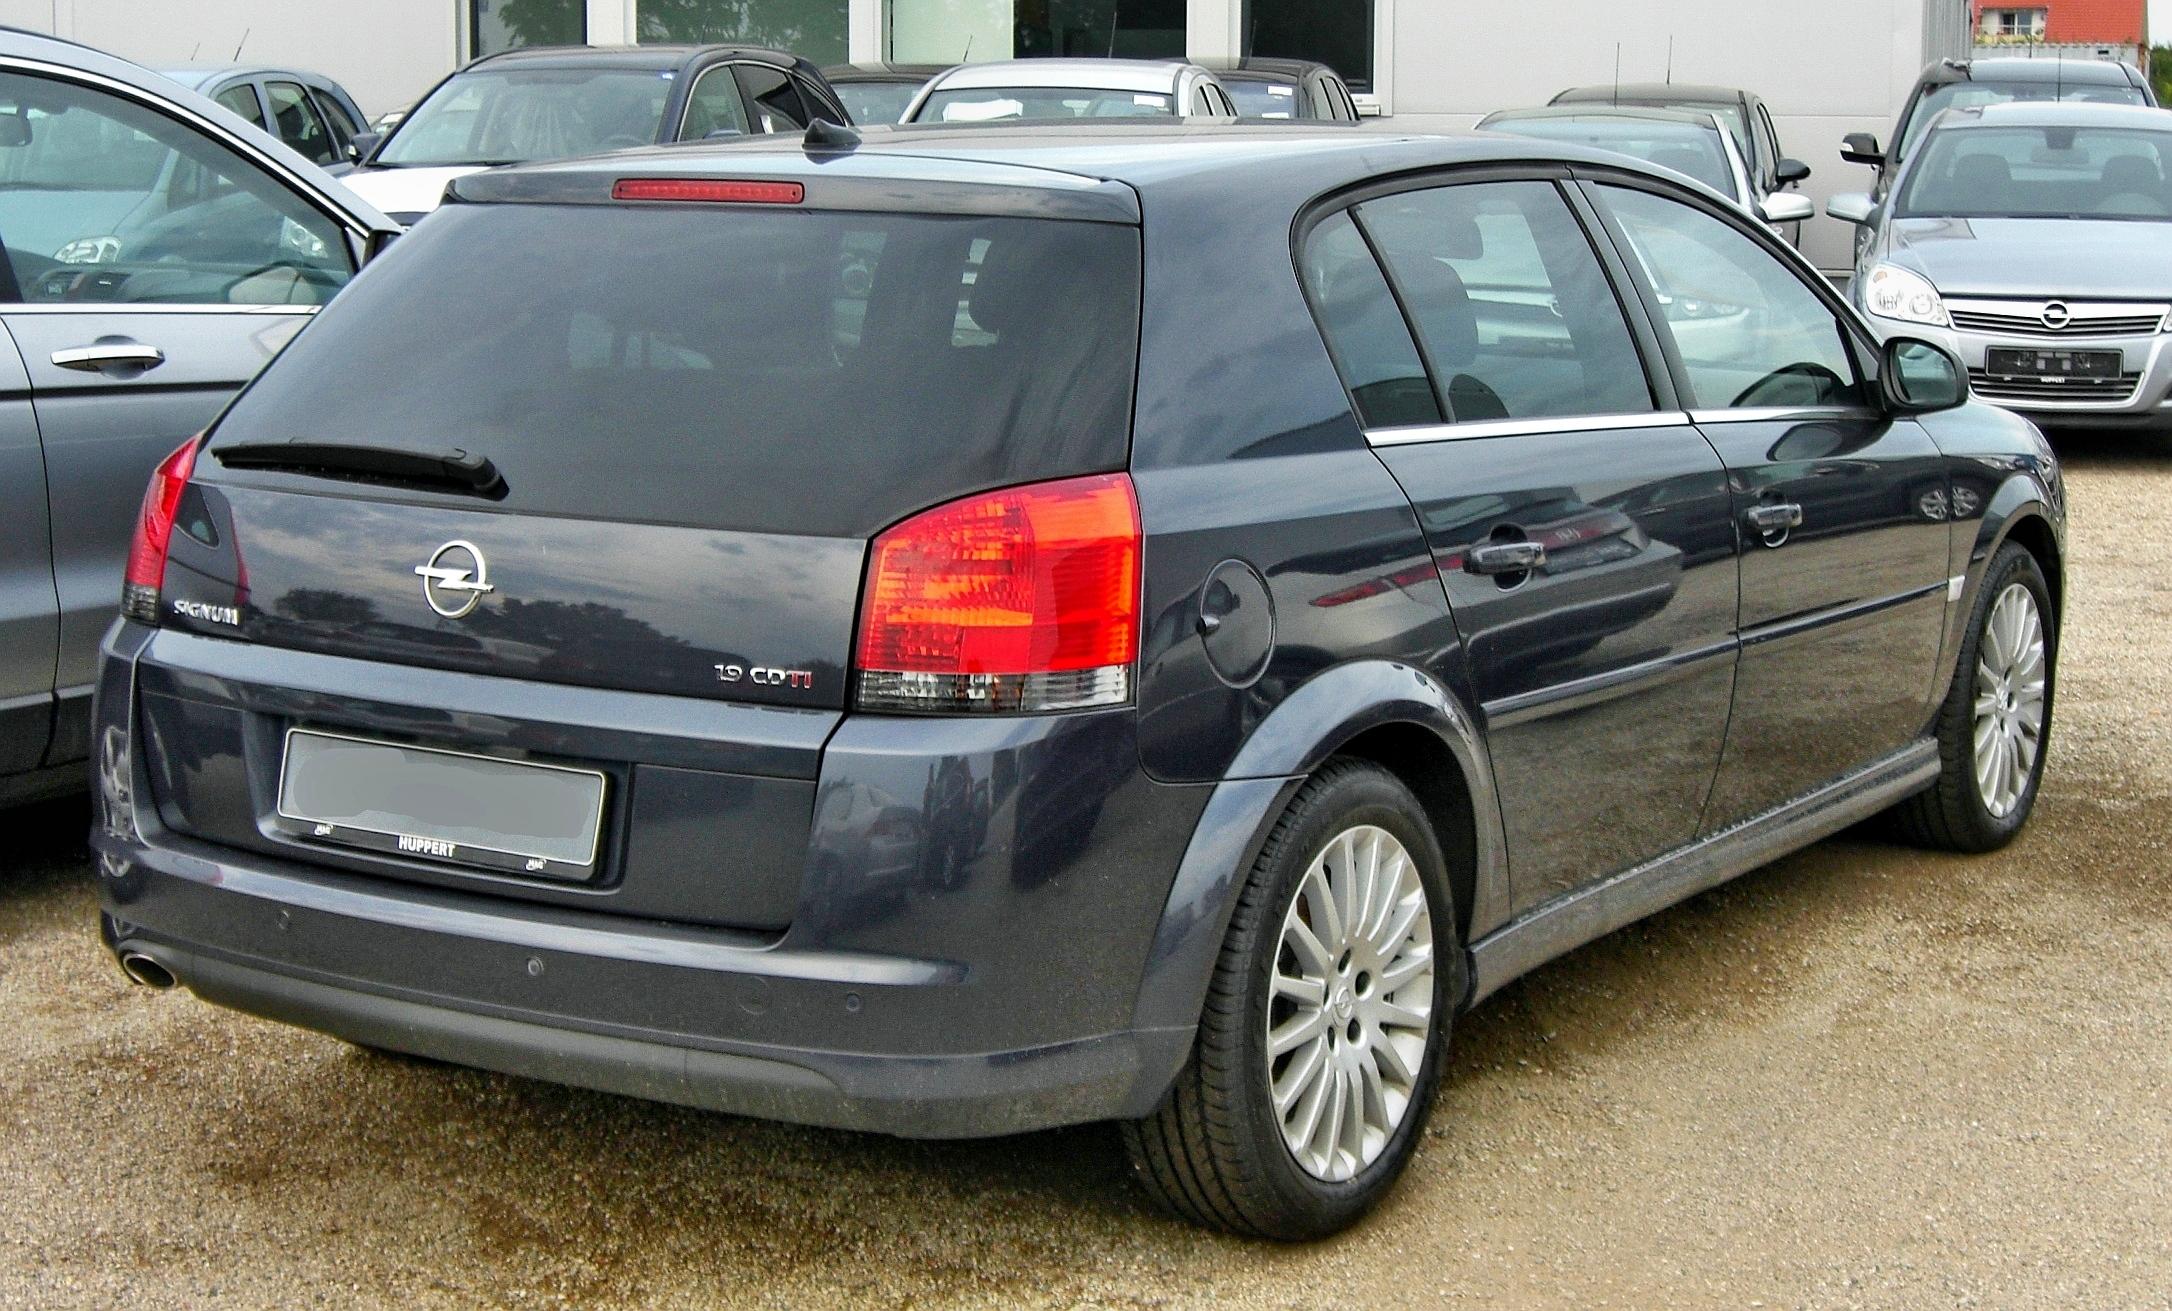 File Opel Signum Facelift 1 9 Cdti Rear 1 Jpg Wikimedia Commons